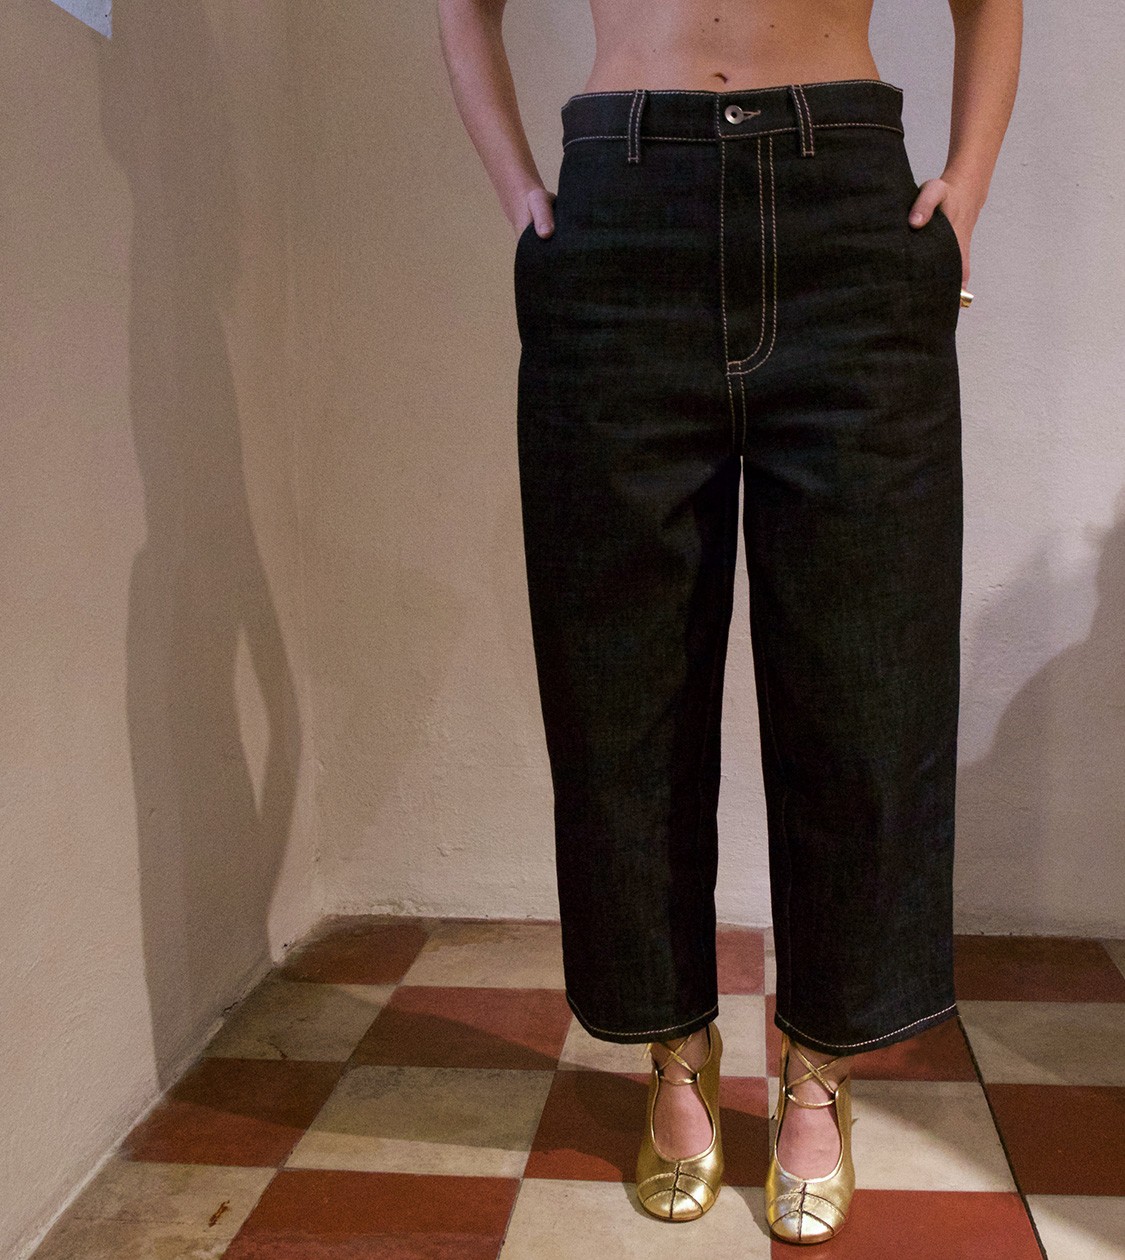 shop Marni  Pantaloni: Pantalone Marni, jeans, modello oversize, colore indigo, quattro tasche, chiusura con cerniera e bottoni, cuciture a contrasto.

composizione: 100% cotone number 1182